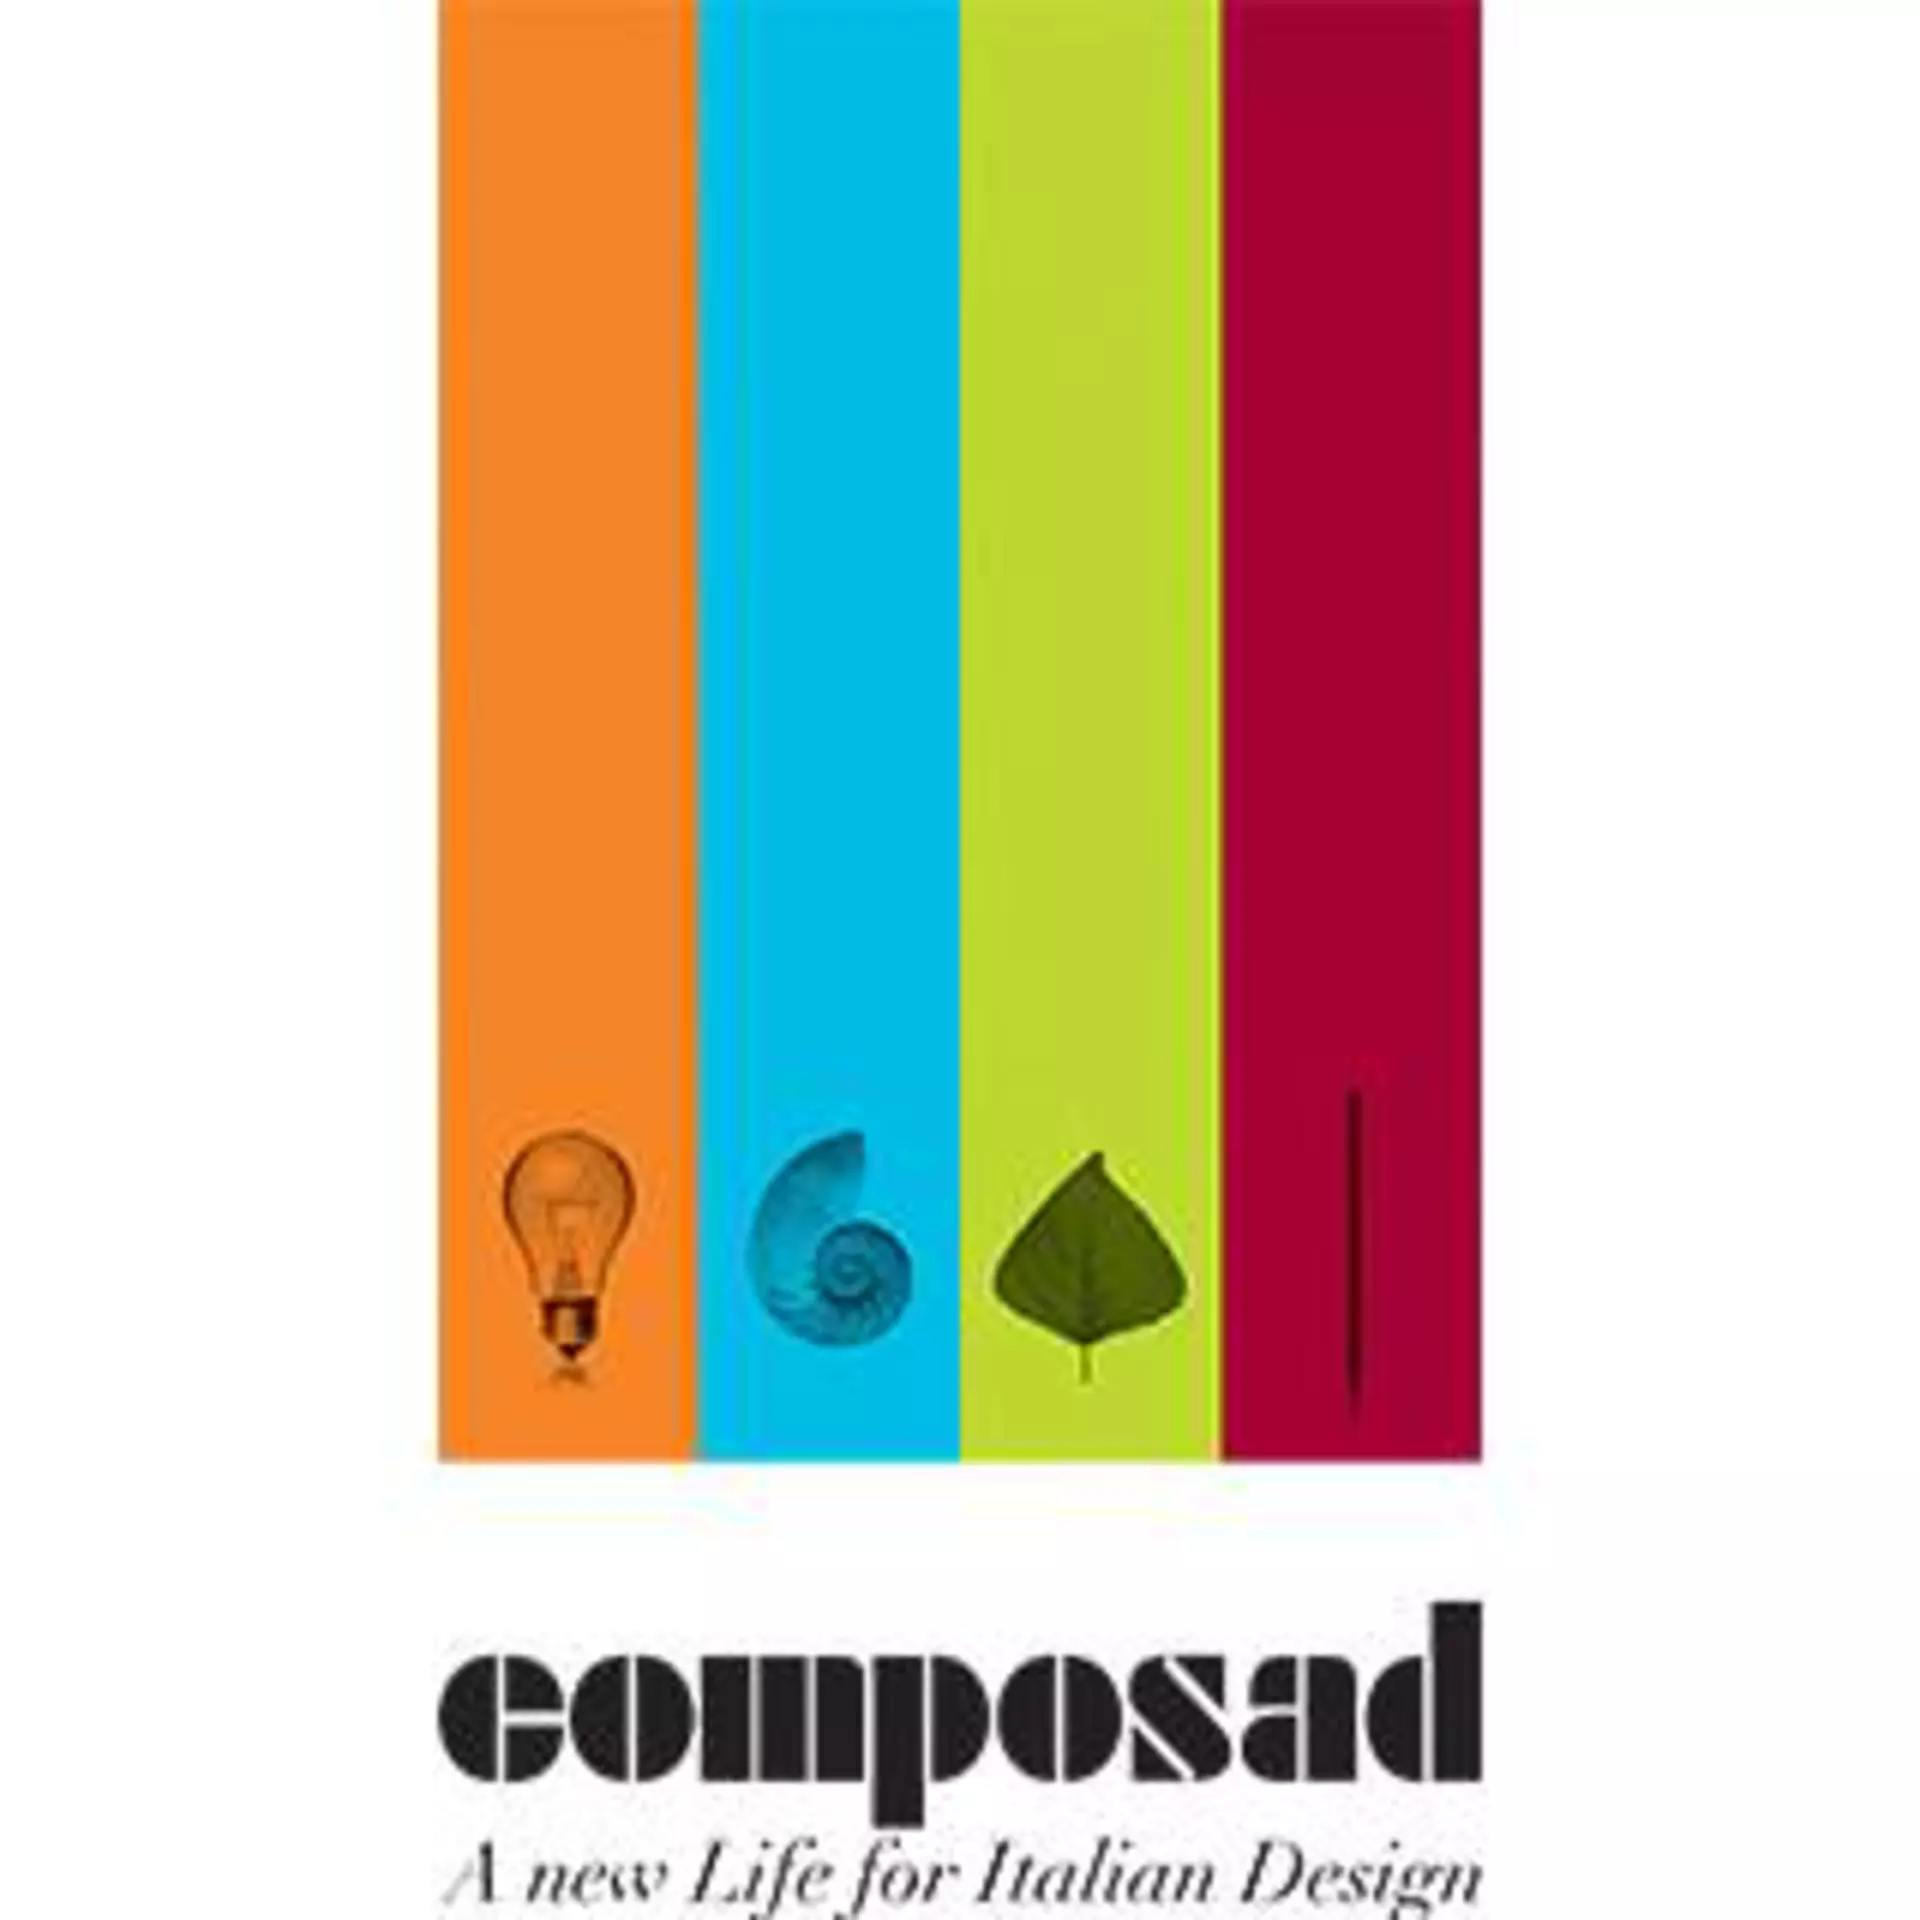 Logo "Comosad - a new Life for Italian Design"